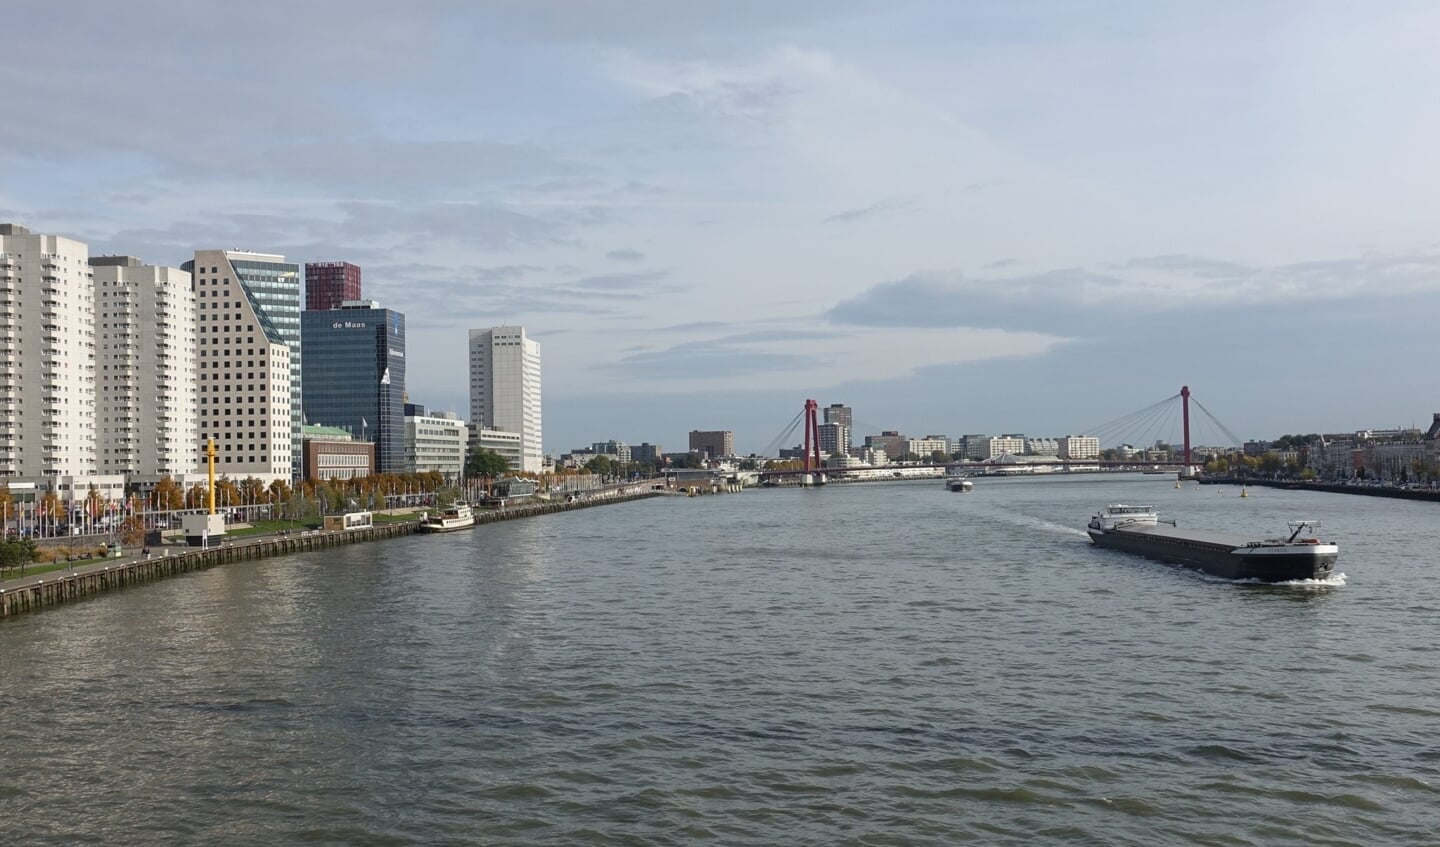  Koninklijke Binnenvaart Nederland (KBN) vindt het schot voor de boeg van wethouder Karremans over de derde brug over de Nieuwe Maas 'verbazingwekkend’'.  Foto: Guilhem Vellut / Wikimedia Commons